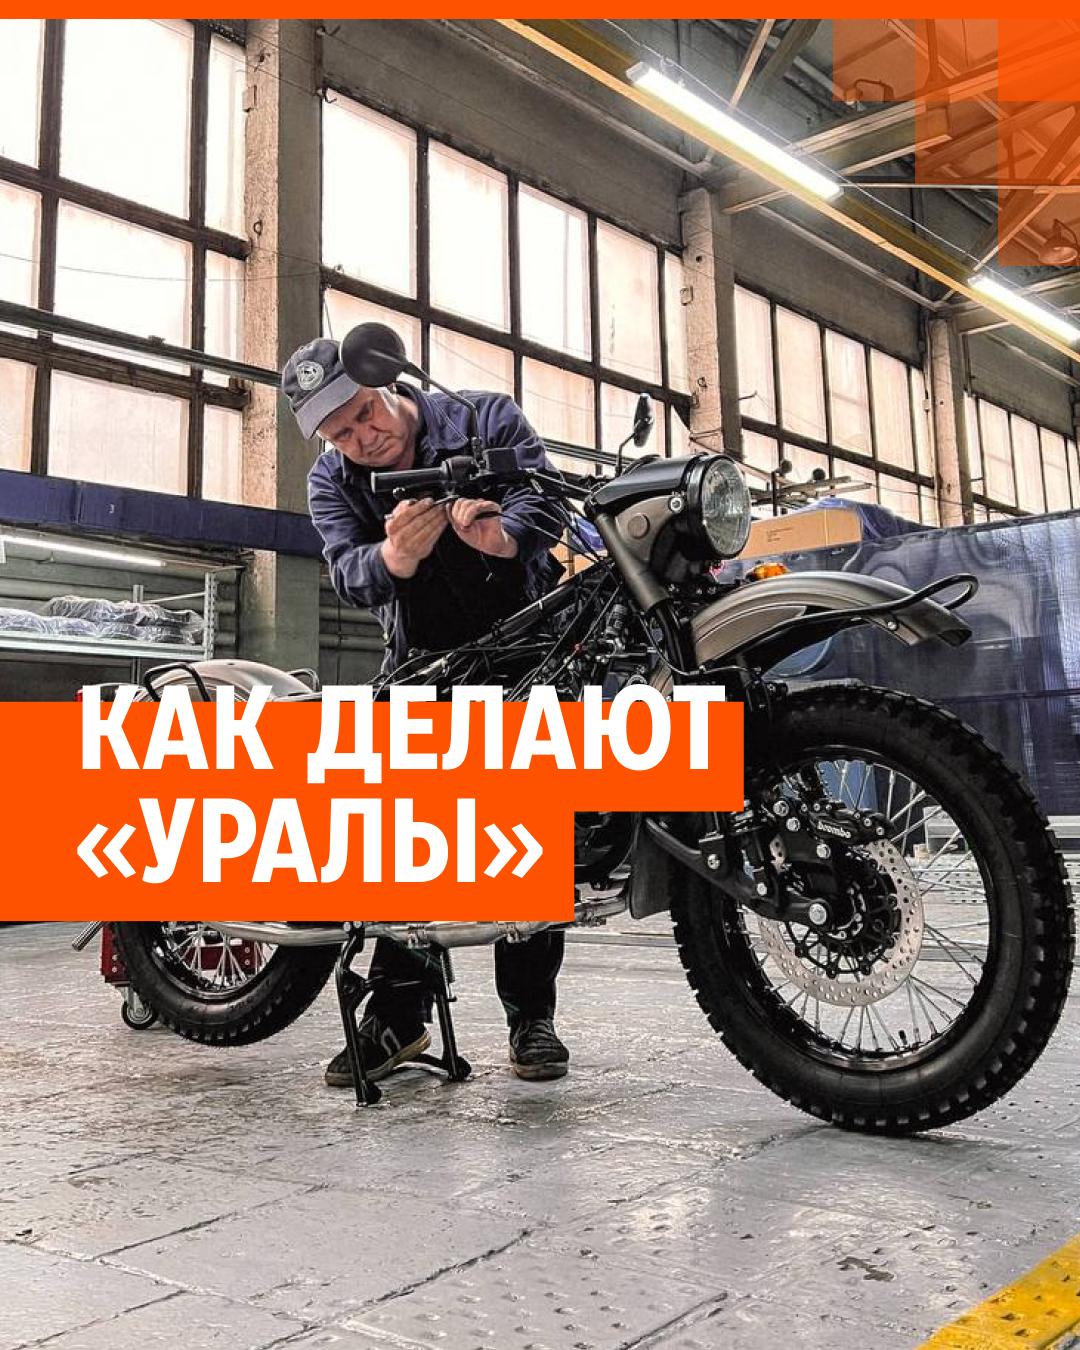 Запчасти на мотоцикл Урал - купить в Екатеринбурге